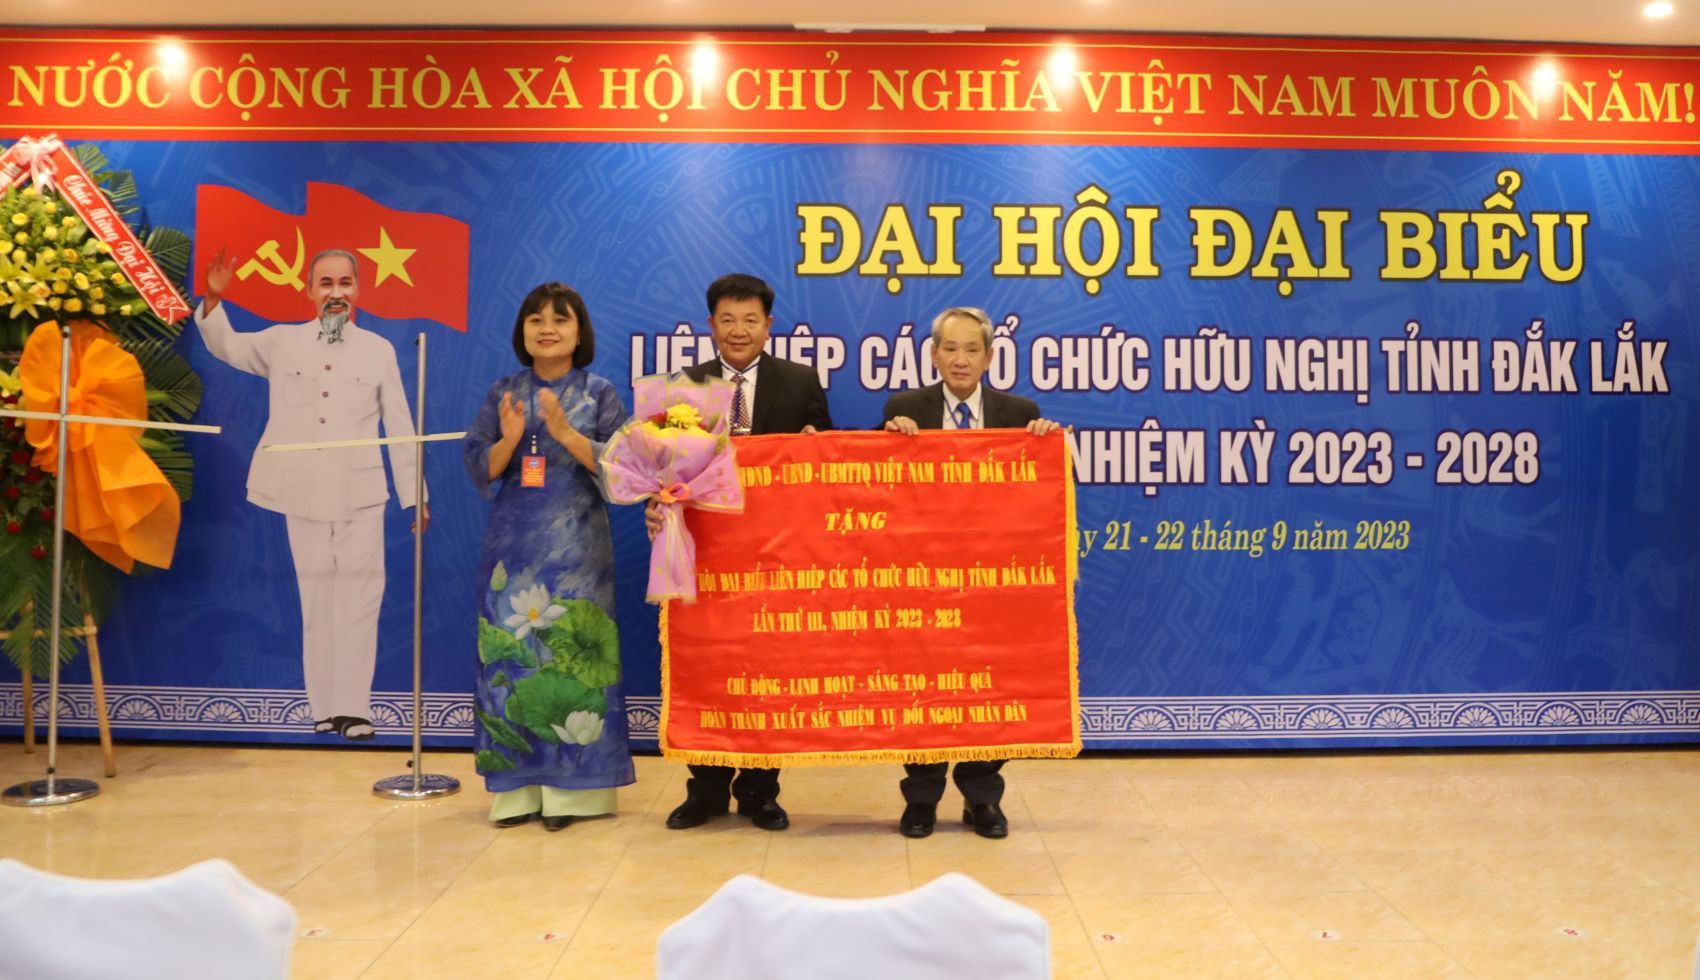 Đại hội đại biểu Liên hiệp các tổ chức hữu nghị tỉnh Đắk Lắk lần thứ III, nhiệm kỳ 2023-2028